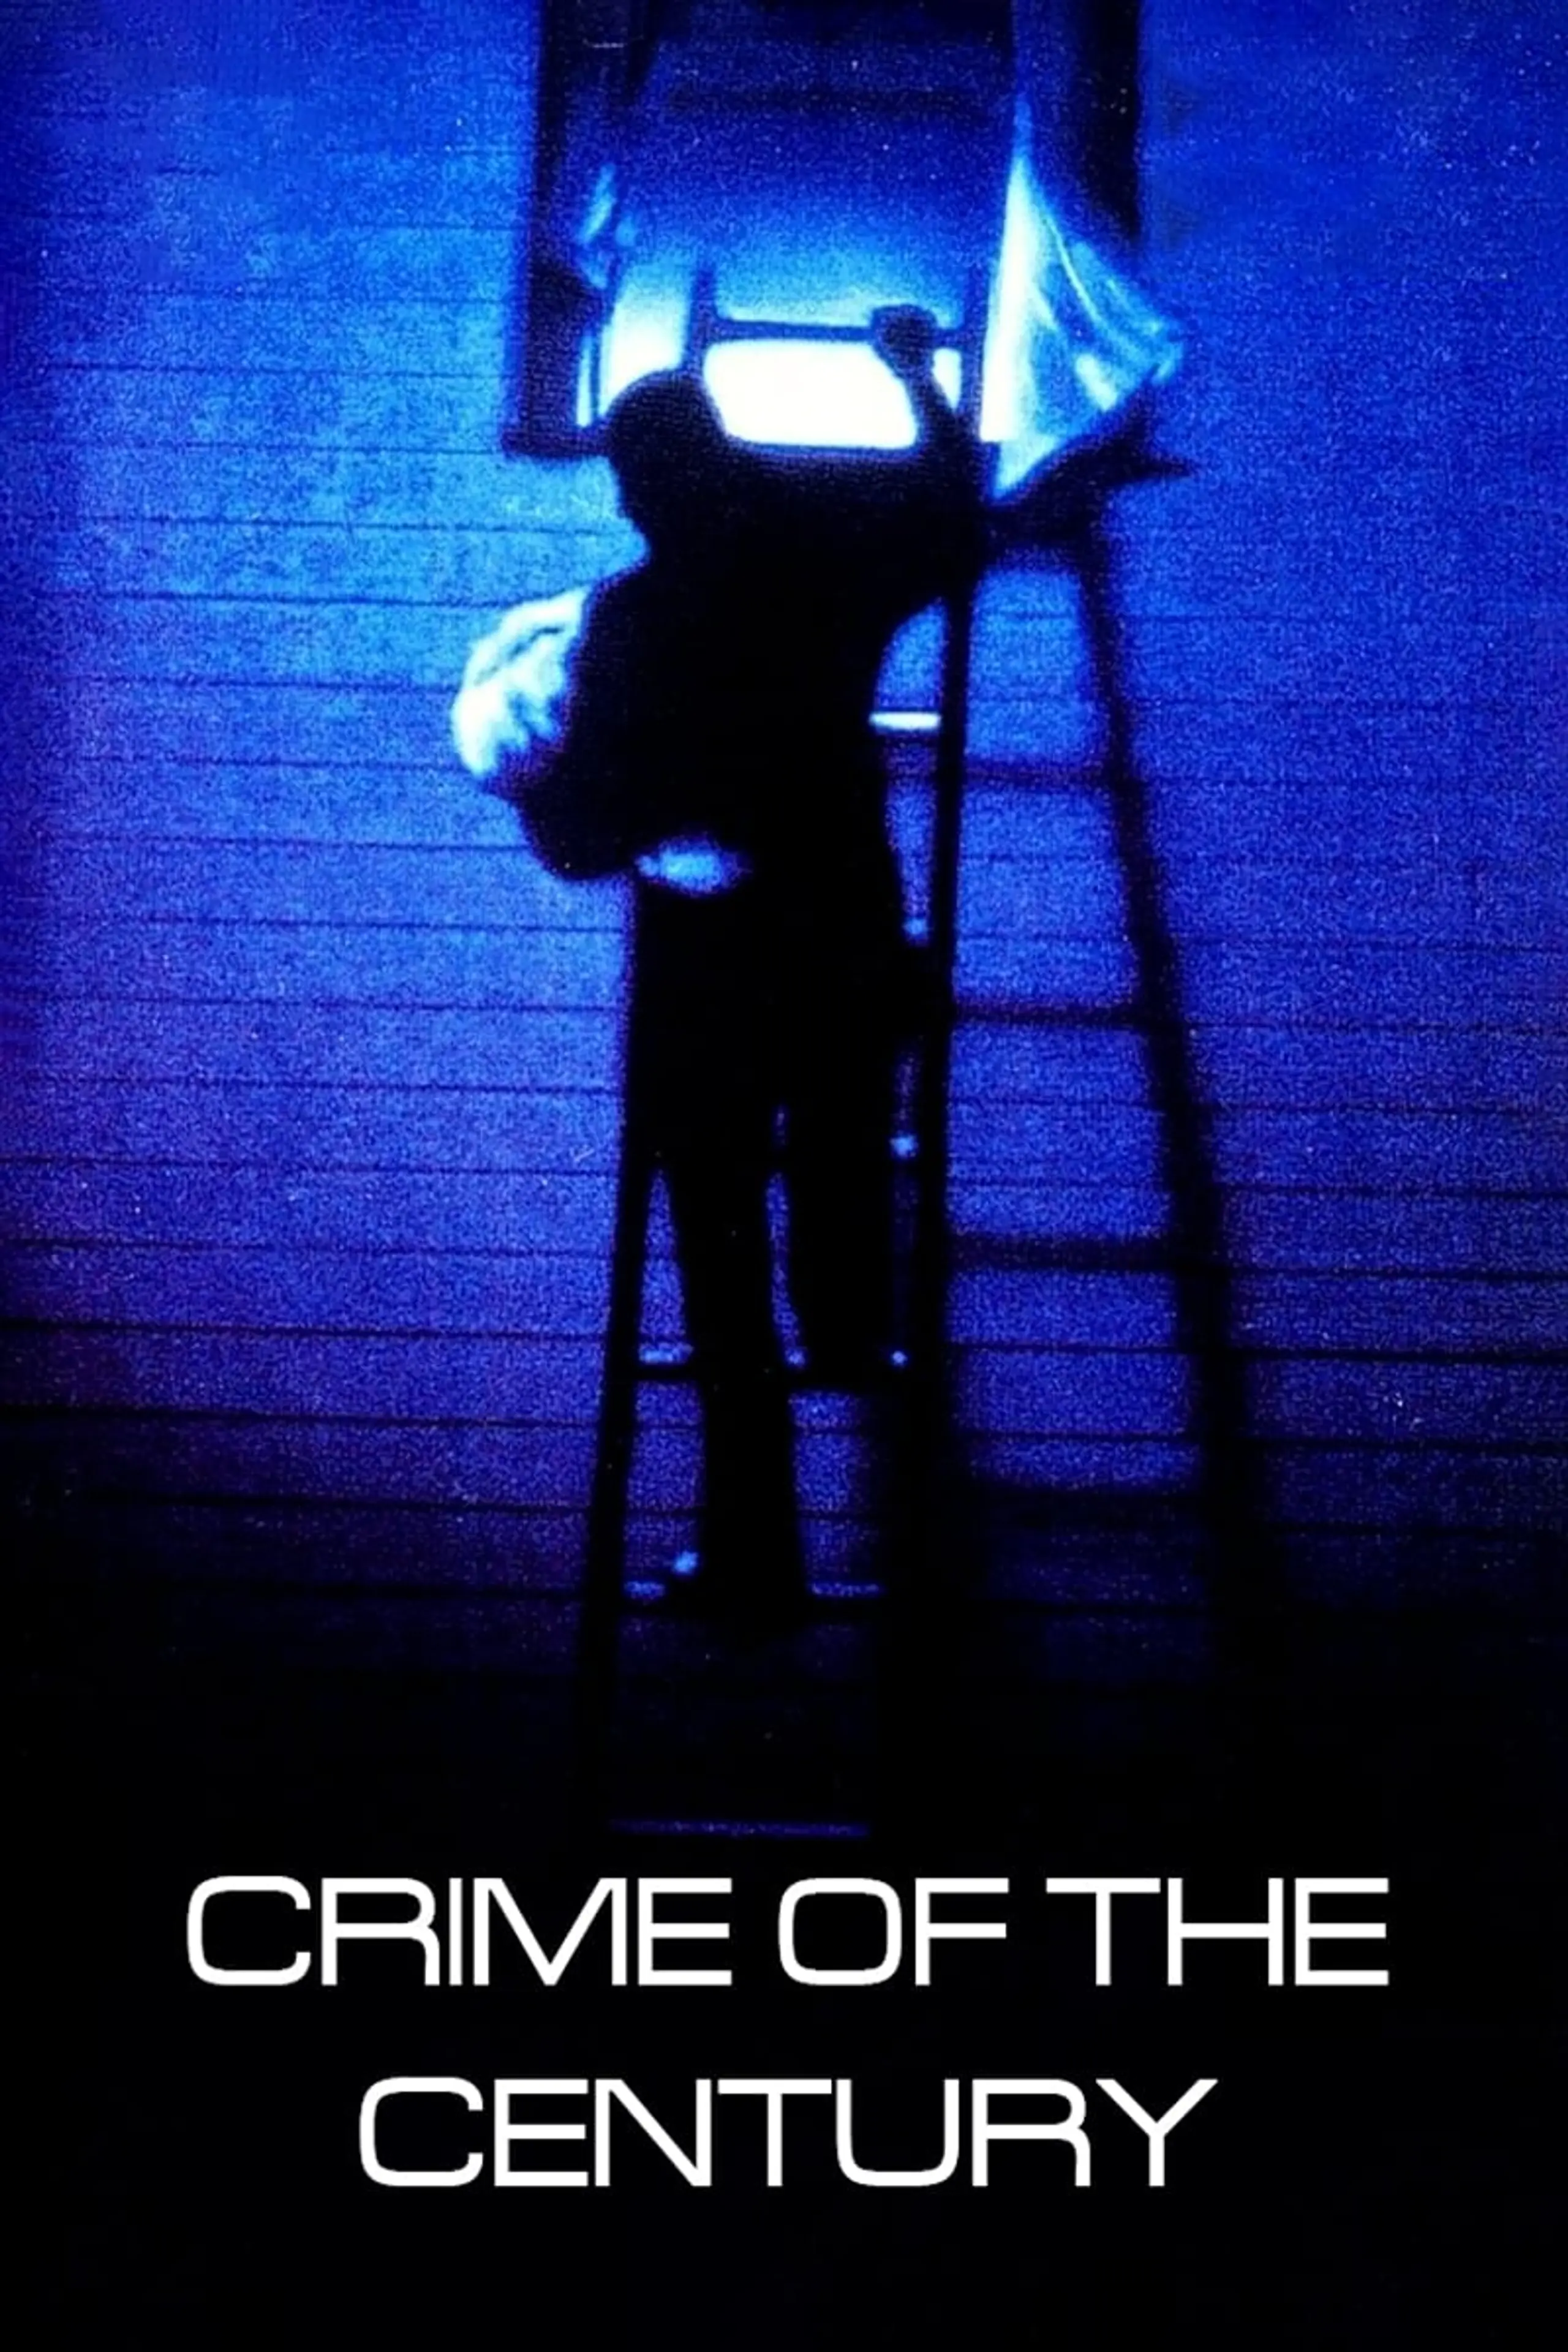 Das Verbrechen des Jahrhunderts